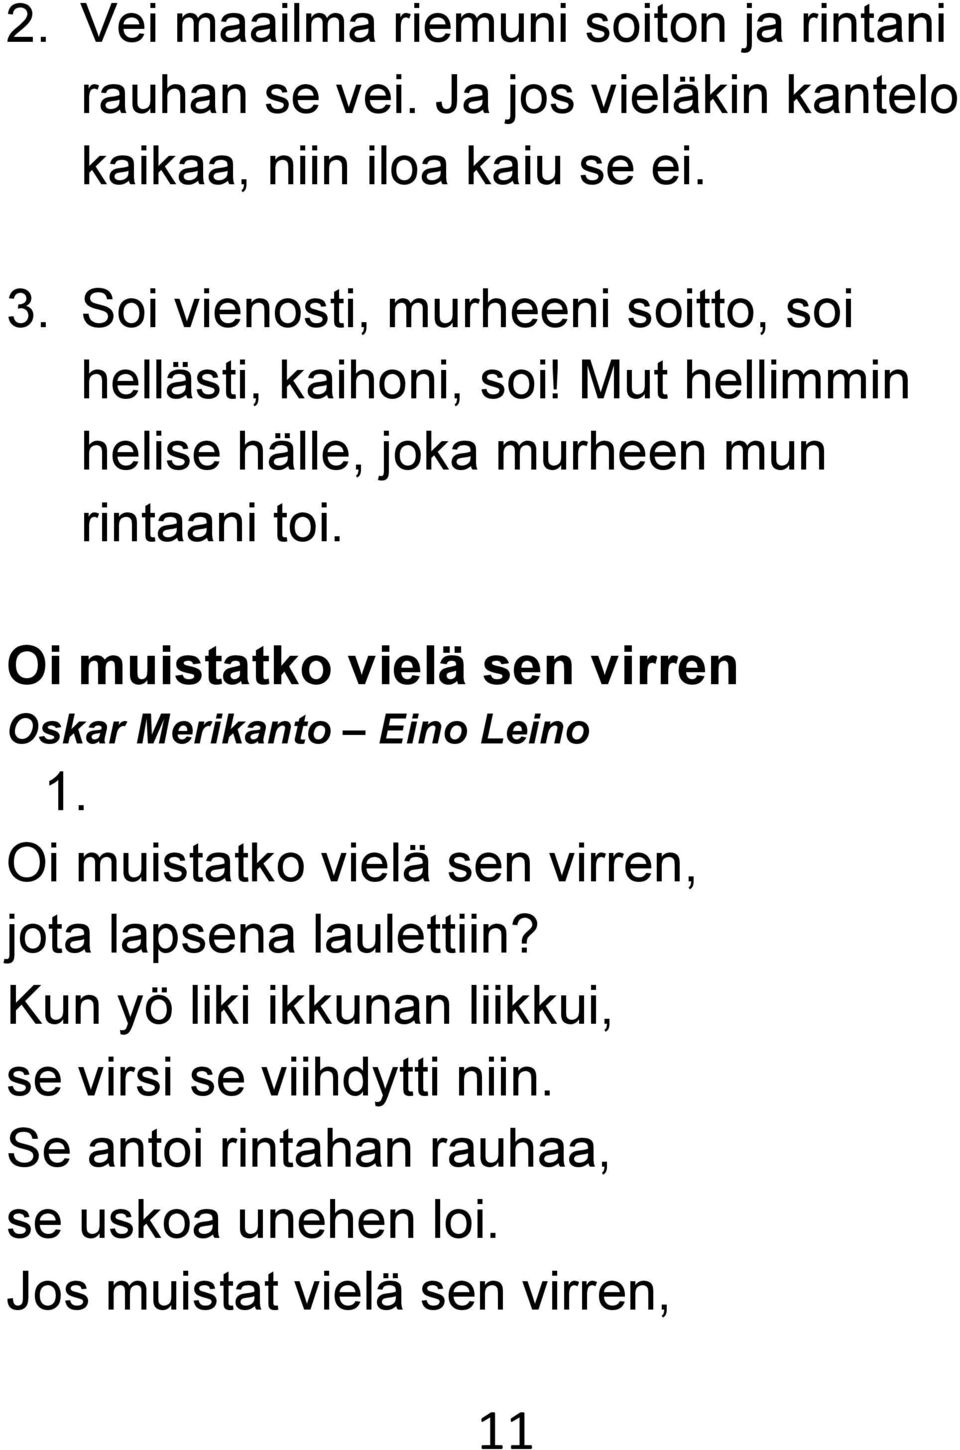 Oi muistatko vielä sen virren Oskar Merikanto Eino Leino 1. Oi muistatko vielä sen virren, jota lapsena laulettiin?